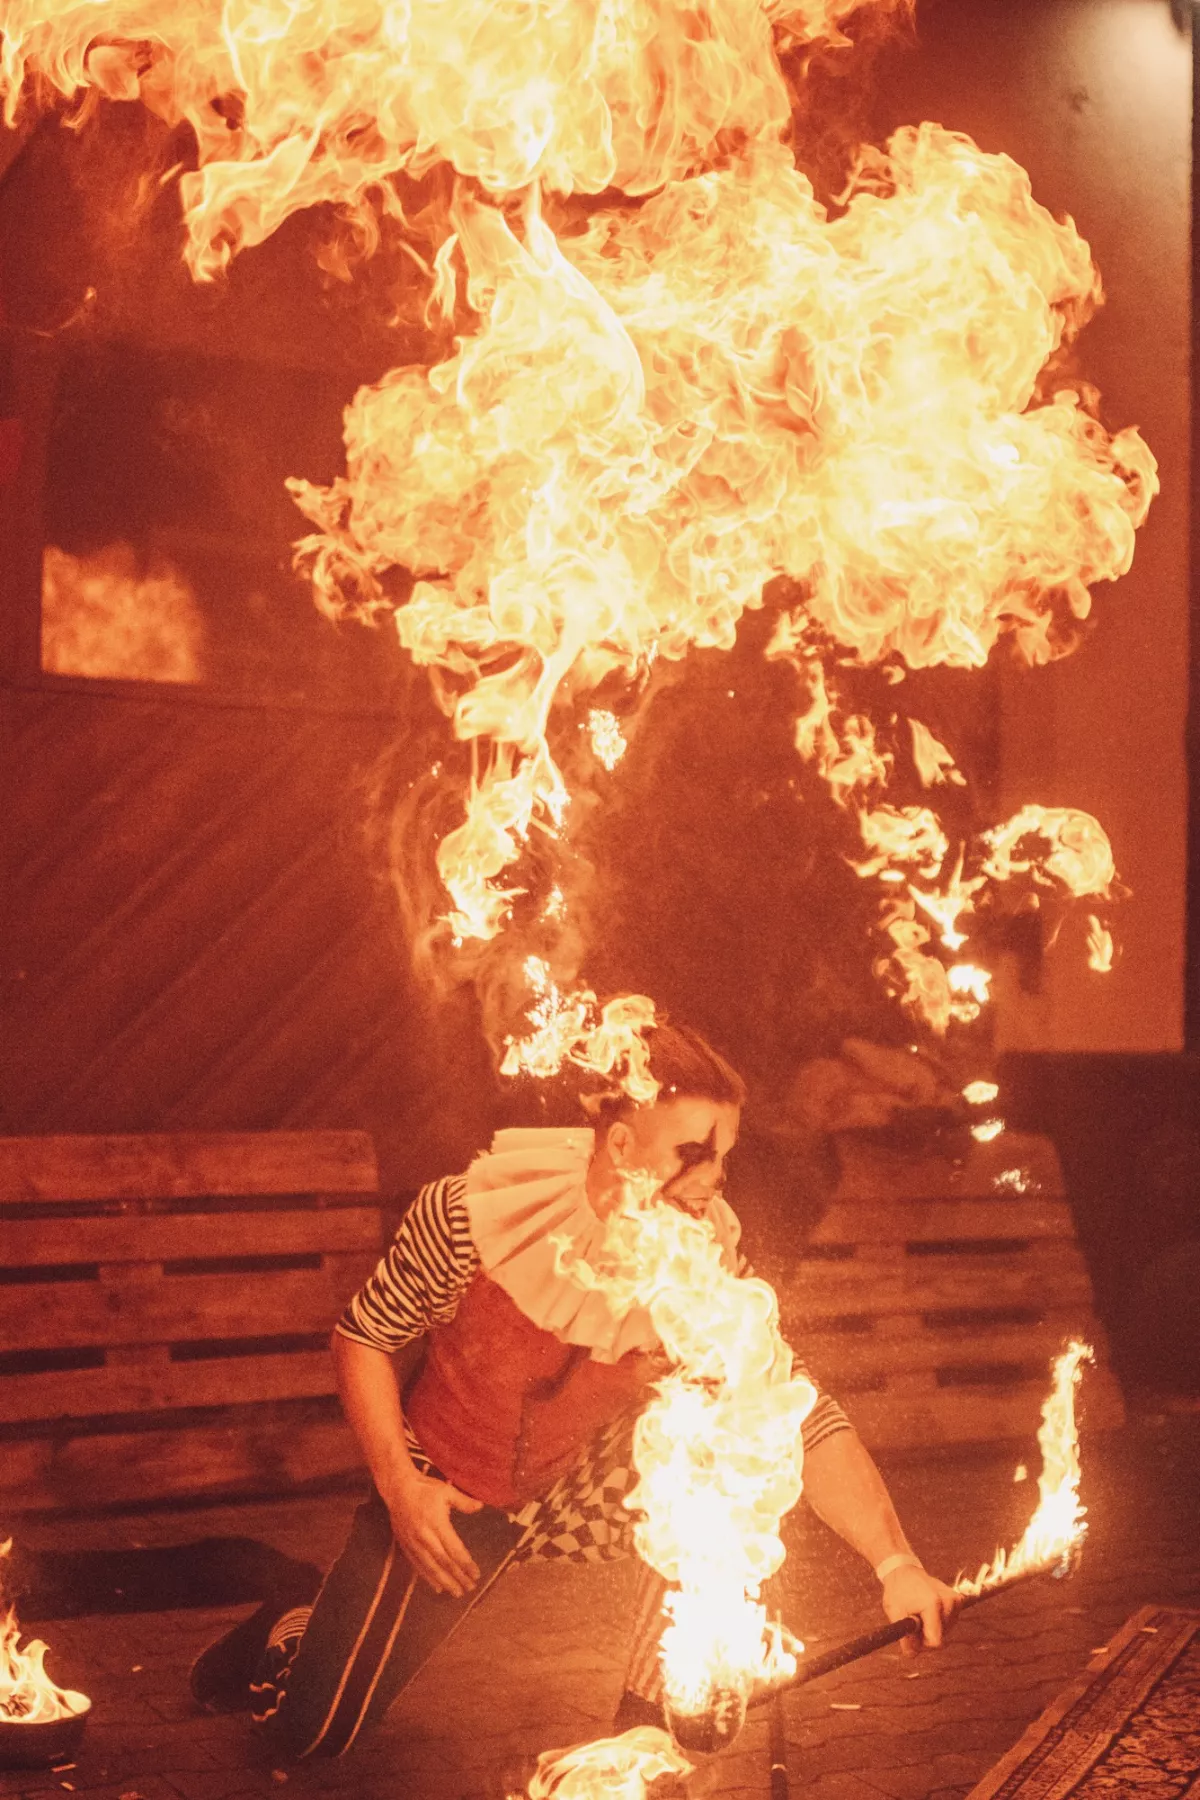 In der Show gibt es auch große Flammen (/images/bilder/thumbs/719_4_bild_JSK_7982.jpeg)